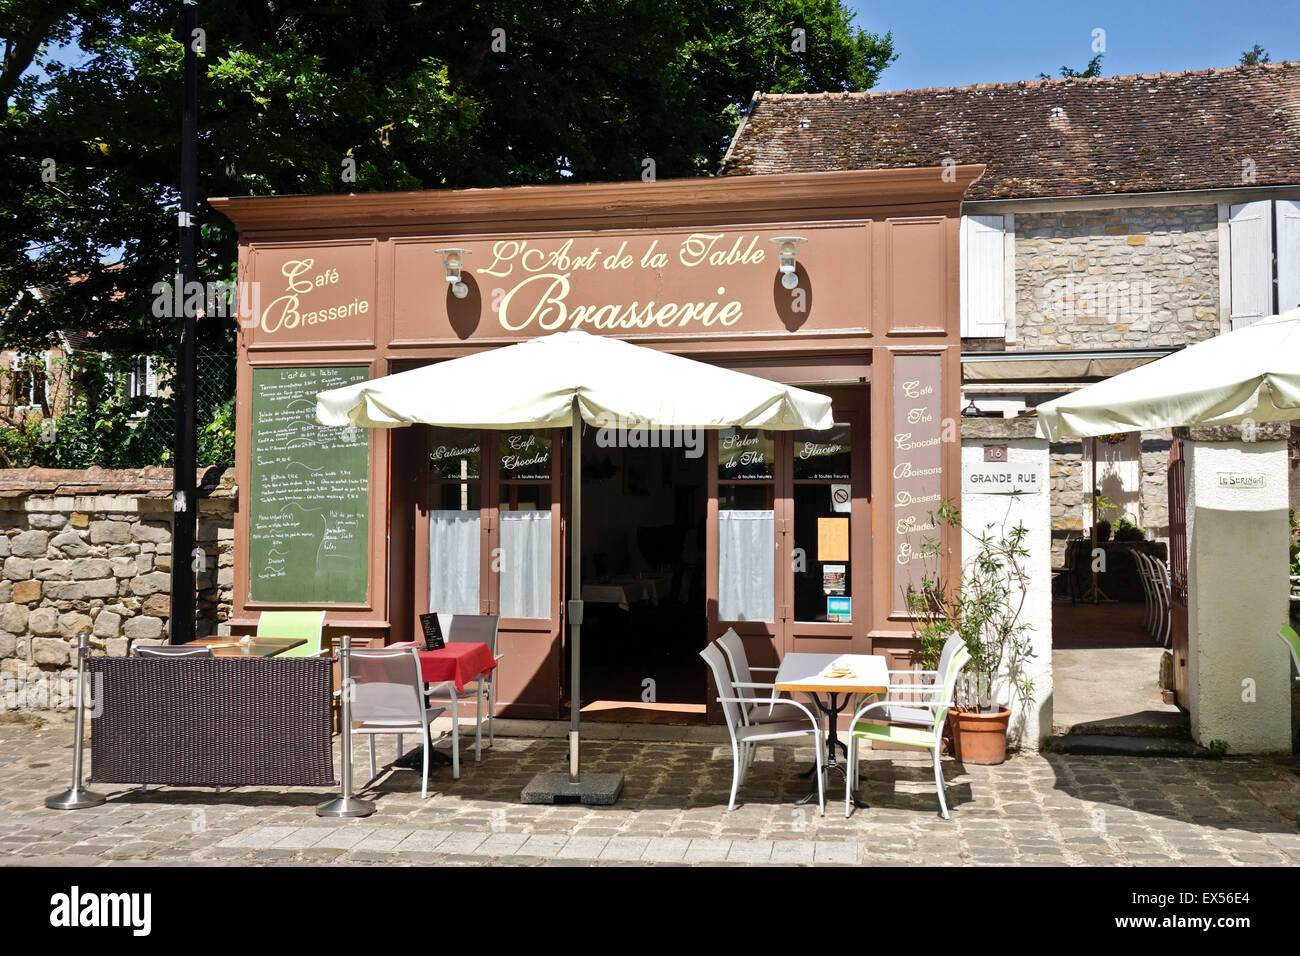 Barbizon frankreich, malerische Restaurantterrasse, französisches Cafe Bistro, Brasserie im Künstlerdorf Barbizon, seine-et-Marne, Frankreich. Stockfoto